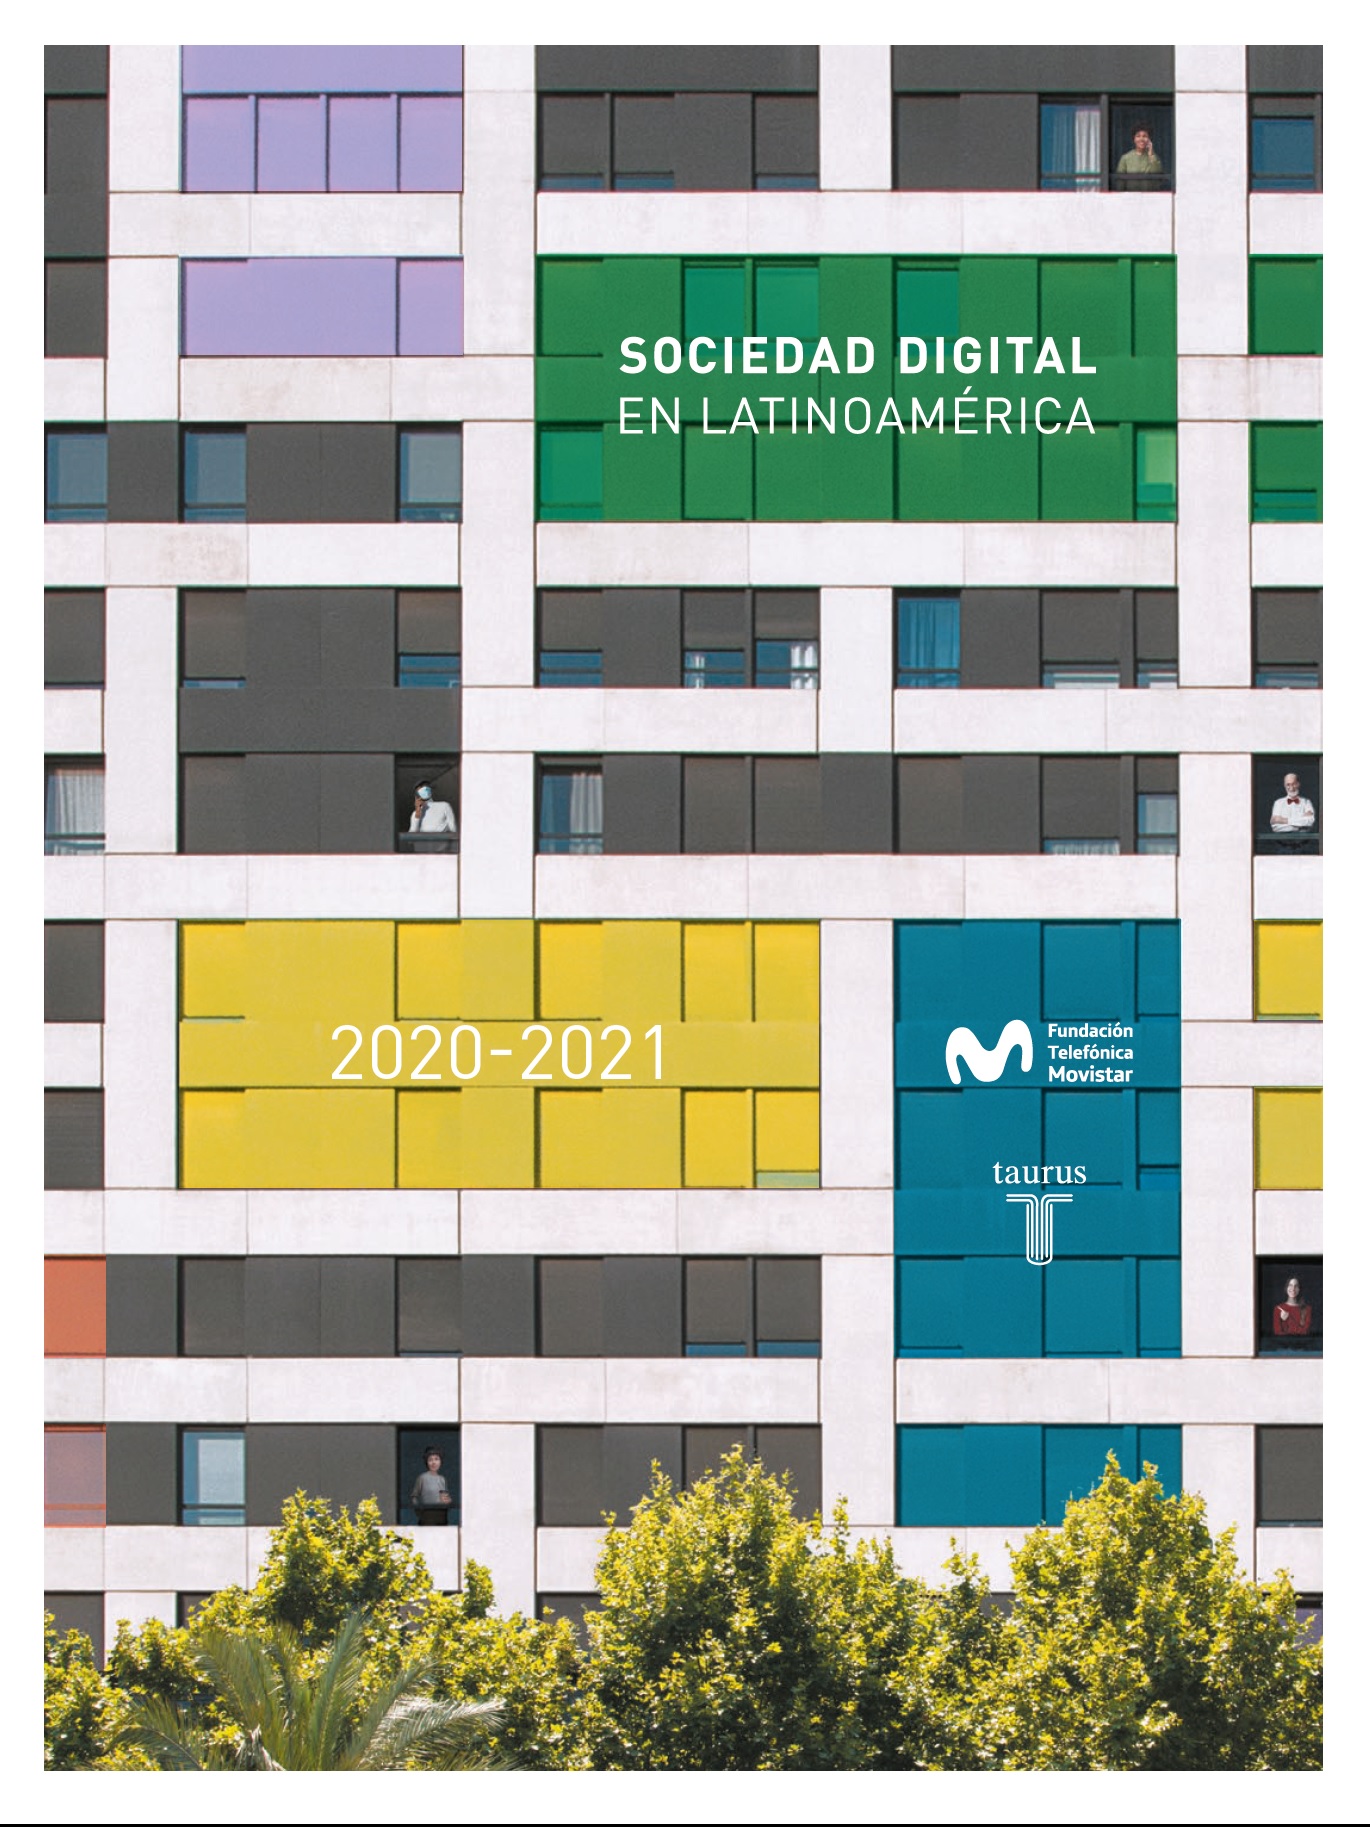 The Digital Society in Latin America 2020-2021